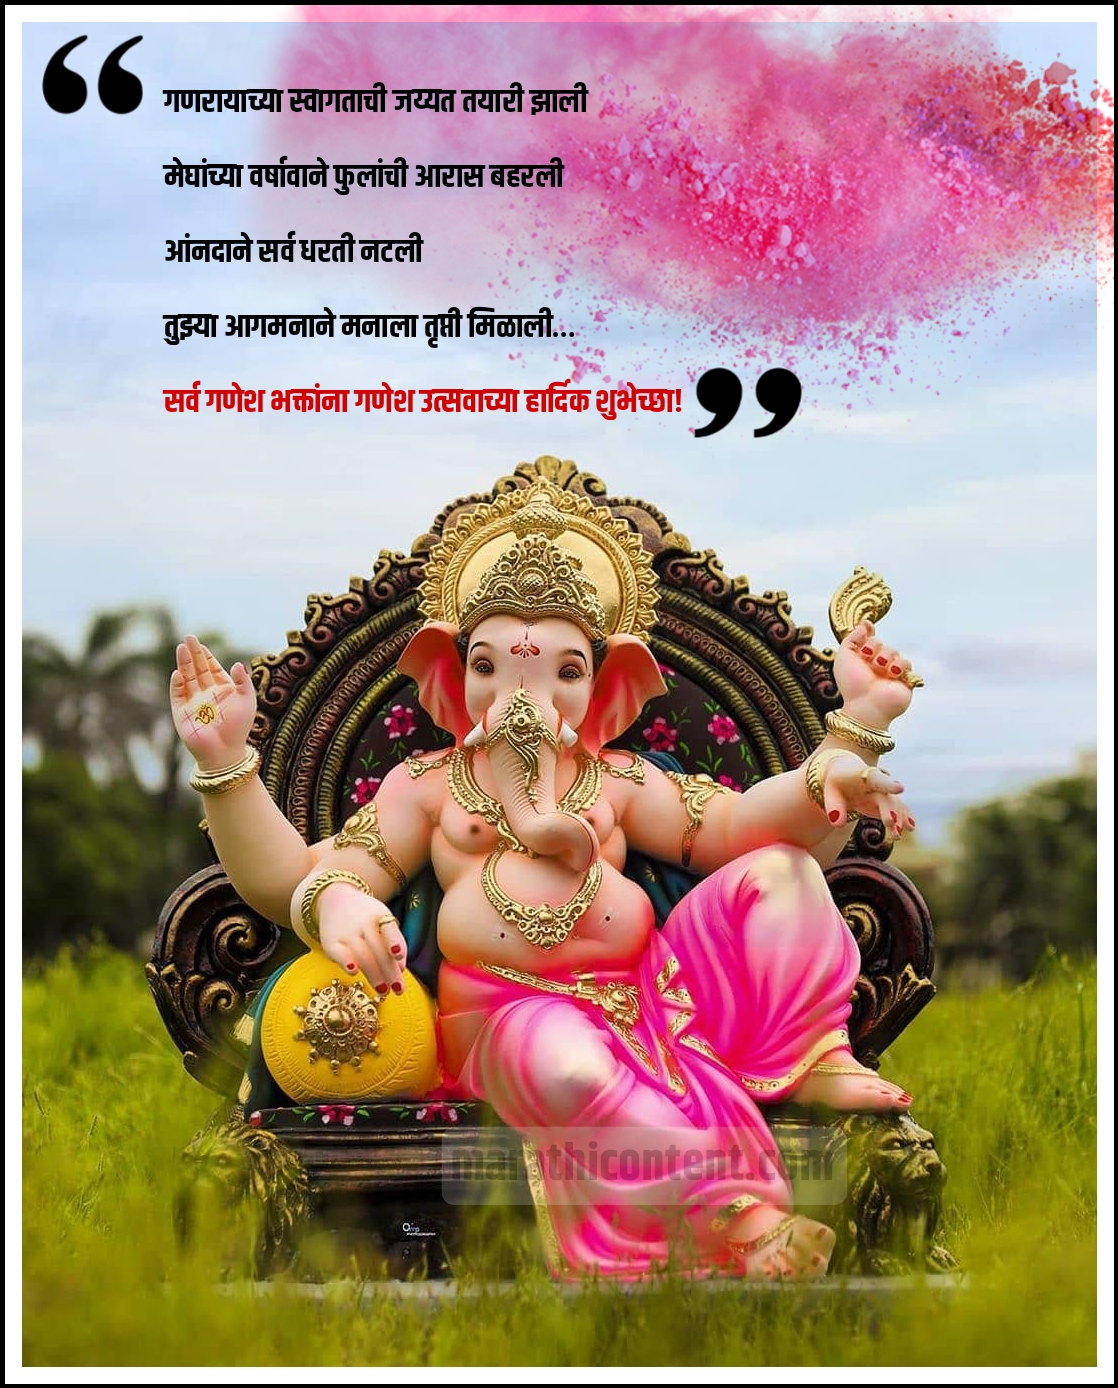 ganesh chaturthi marathi wishes images